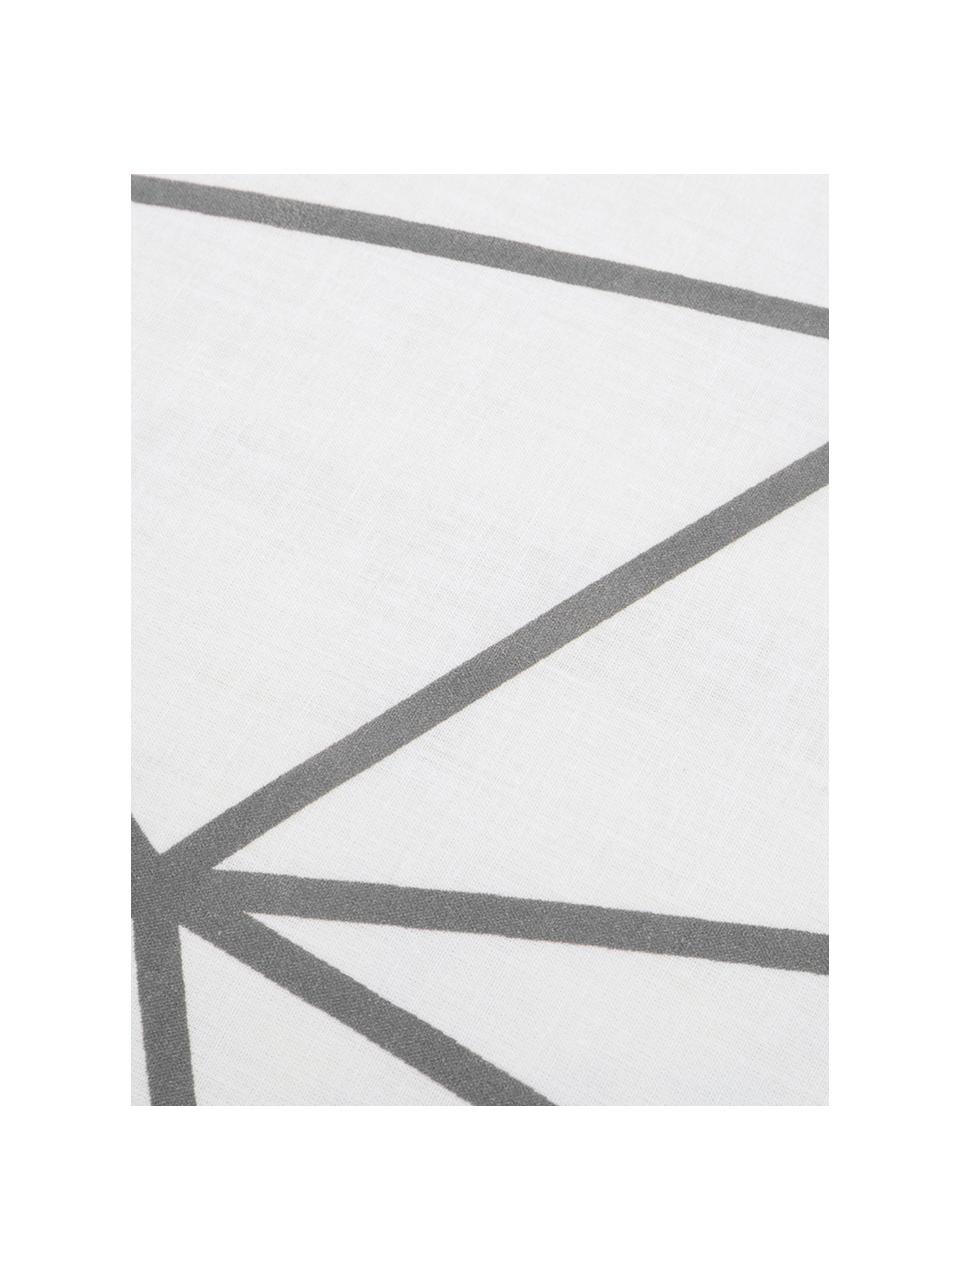 Dubbelzijdig dekbedovertrek Bray, Katoen, Bovenzijde: wit, grijs. Onderzijde: wit, 140 x 200 cm